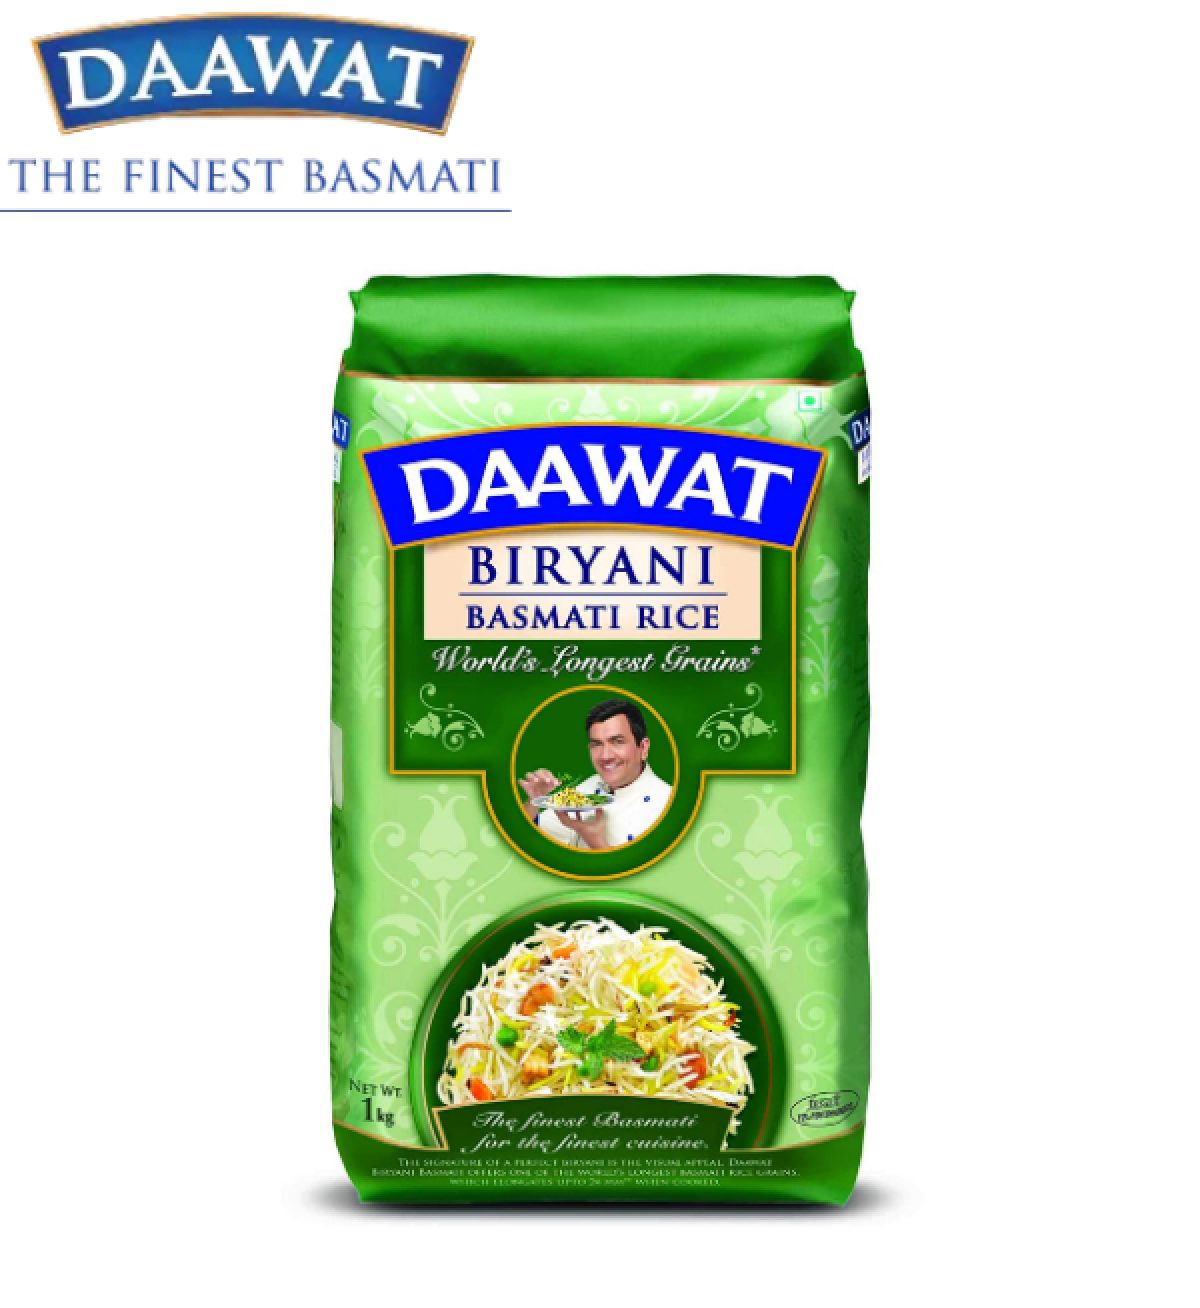 Daawat Biryani World's Longest Basmati Rice, 1 Kg